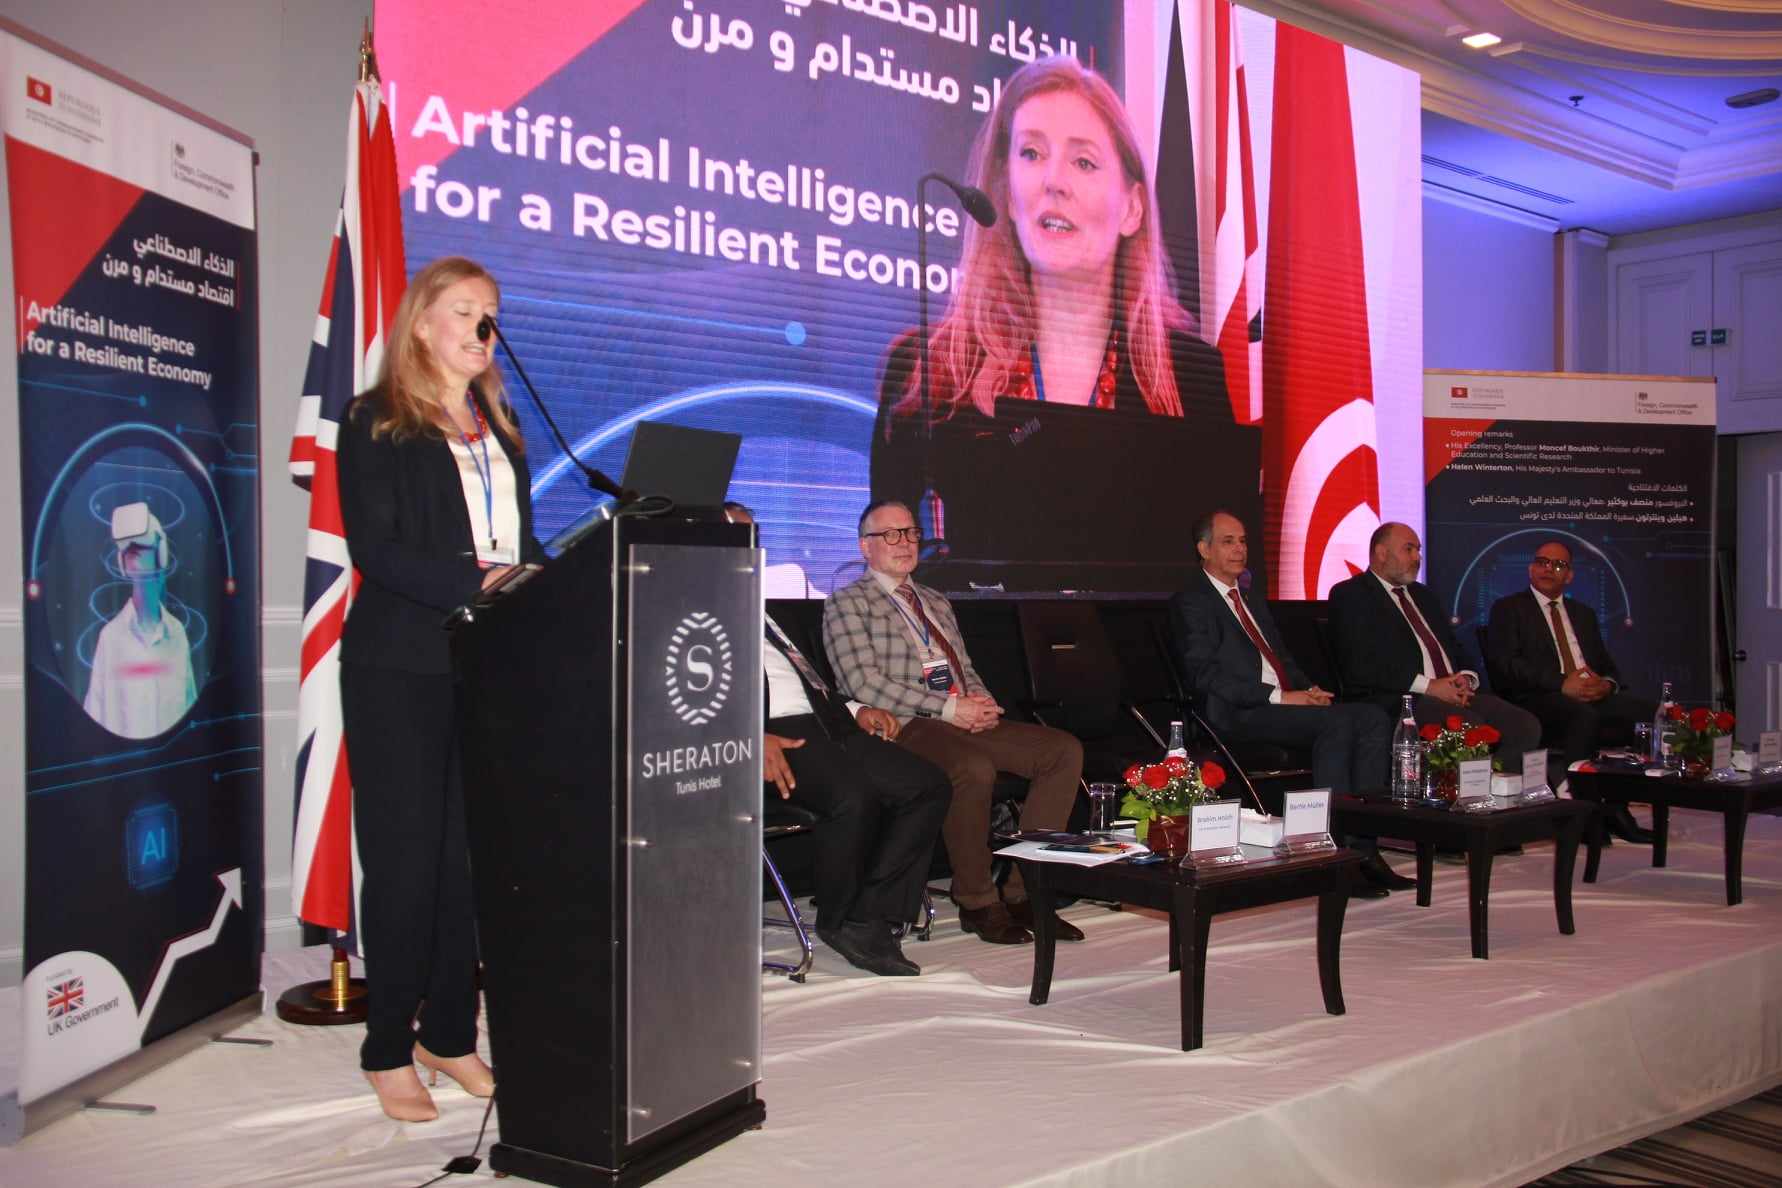 سفيرة المملكة المتحدة لـ"الصباح نيوز" : تونس تزخر بالمهارات والكفاءات في مجال الذكاء الإصطناعي